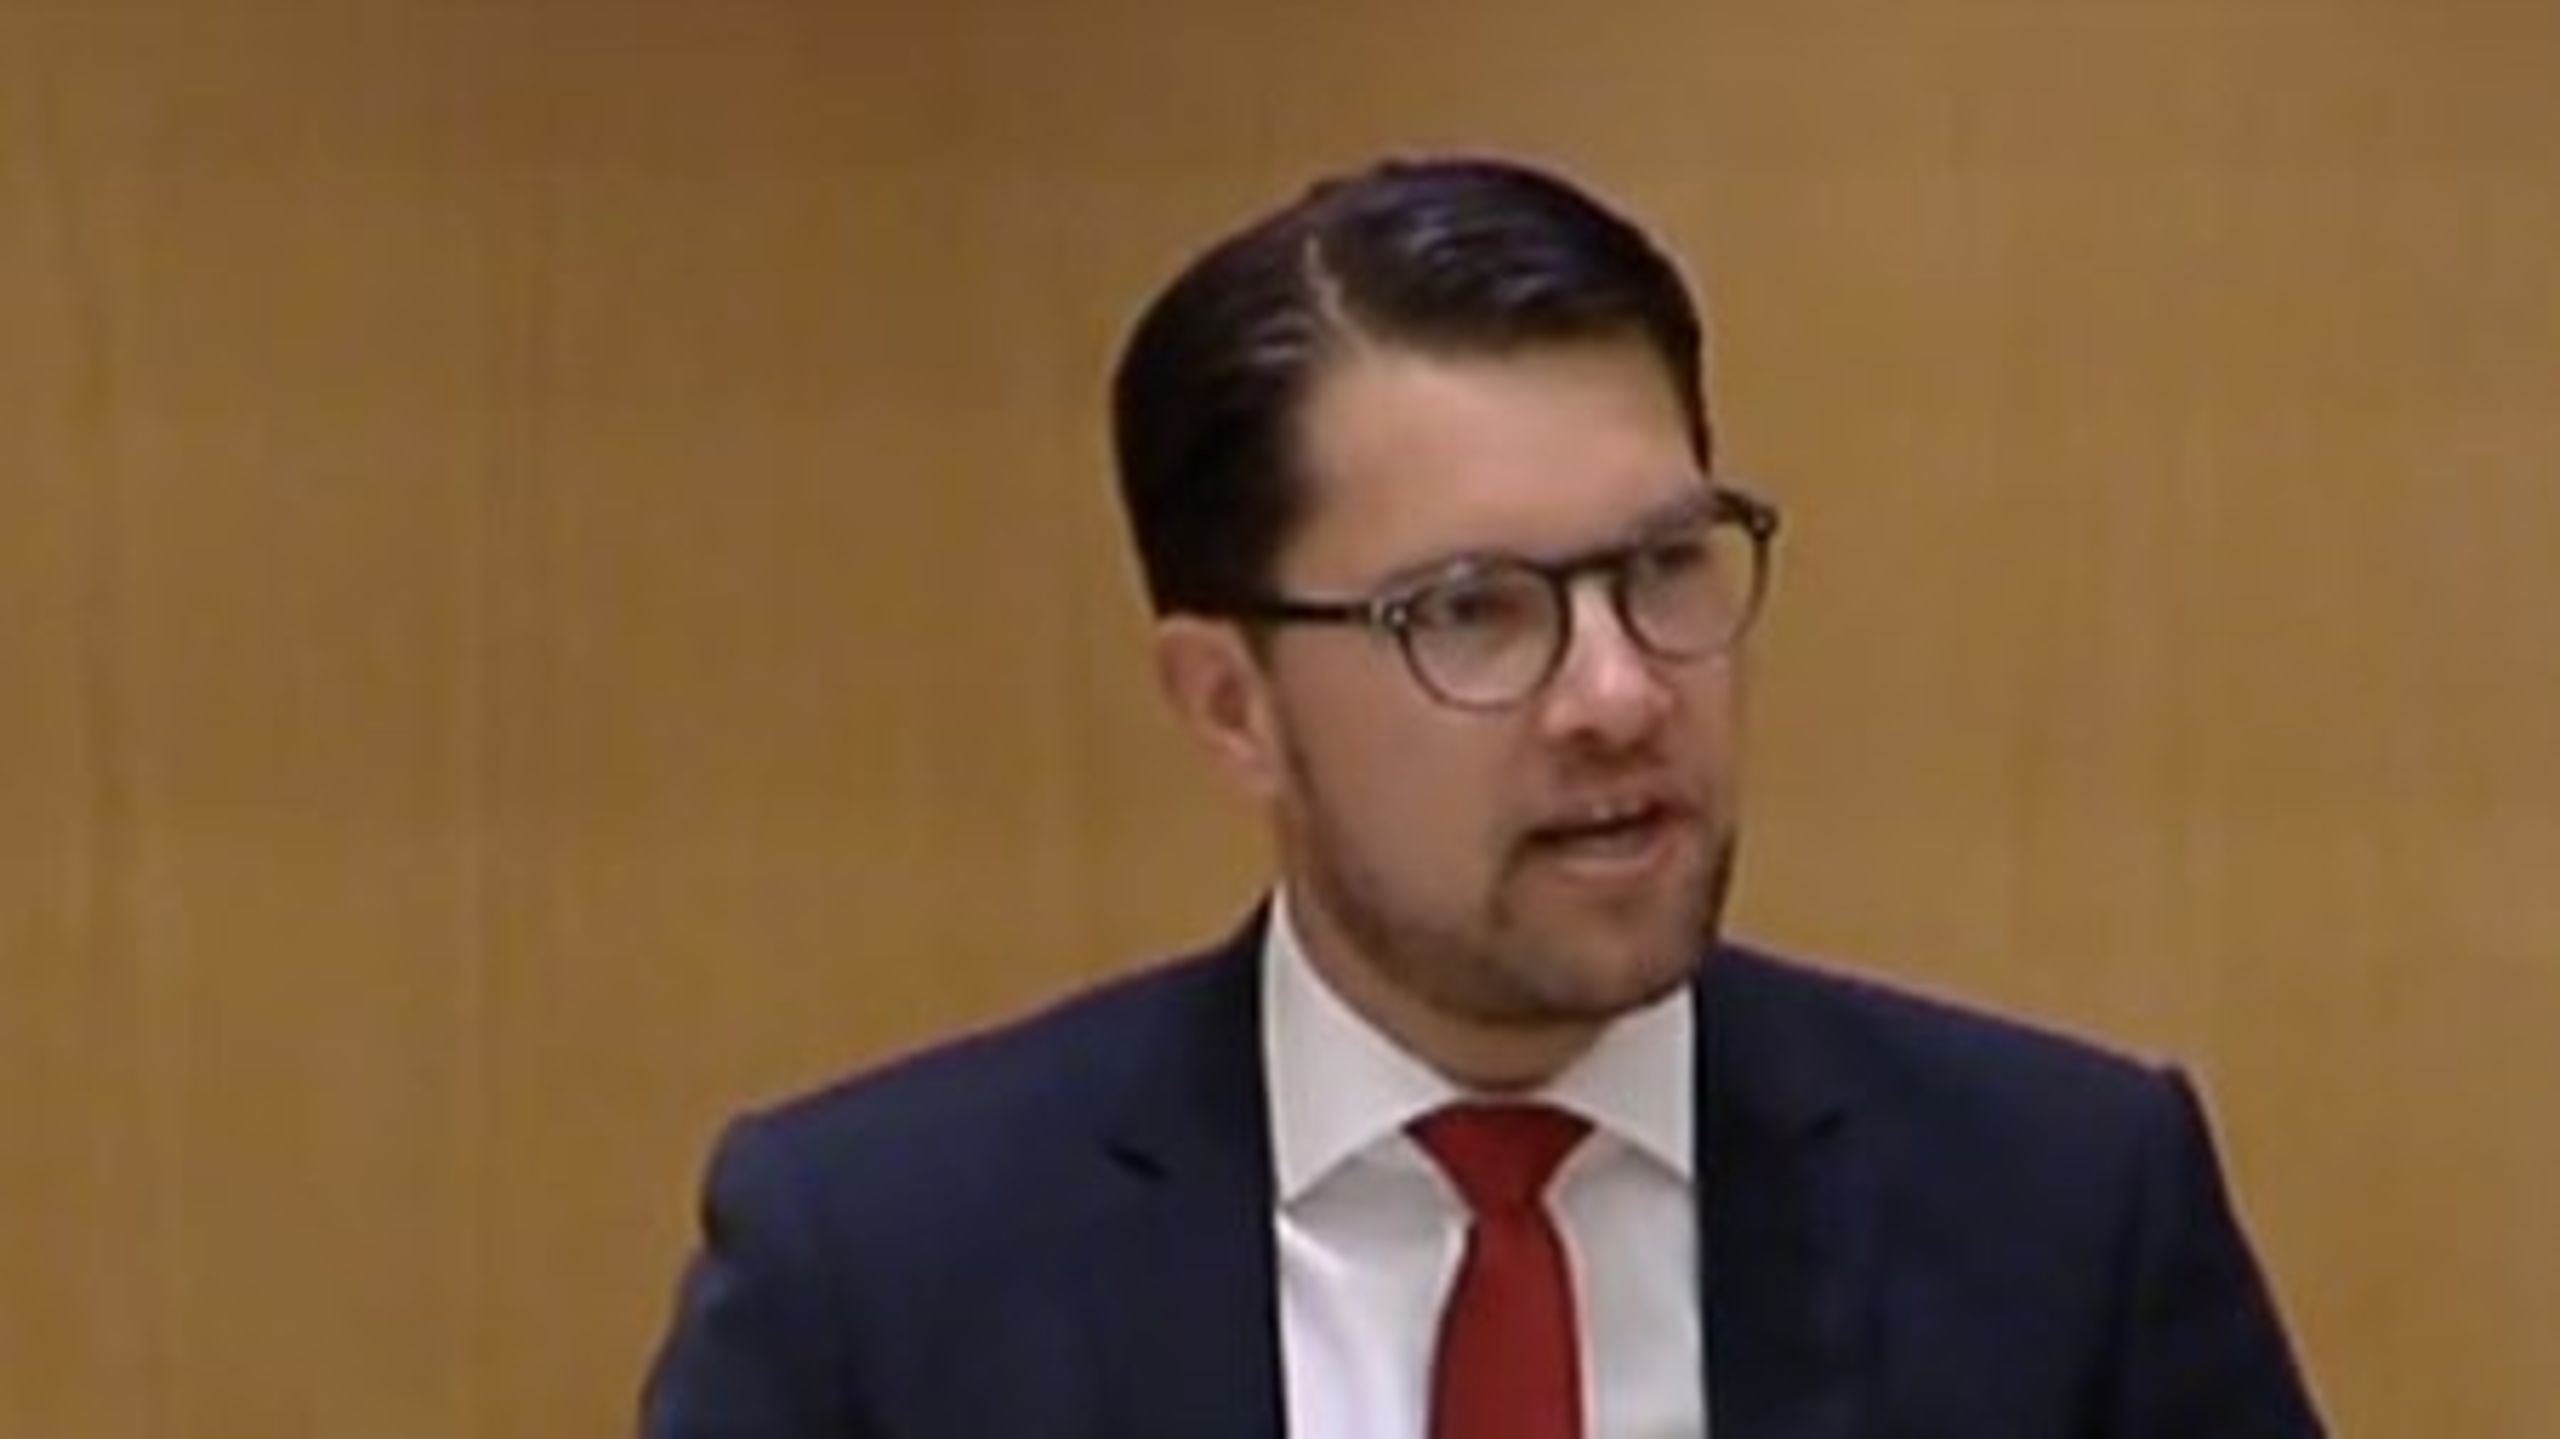 Sverigedemokraternas partiledare Jimmie Åkesson vill att riksdagen riktar ett misstroende mot finansminister Magdalena Andersson, bland annat&nbsp;för vad han anser är&nbsp;en underfinansierad migrationspolitik.